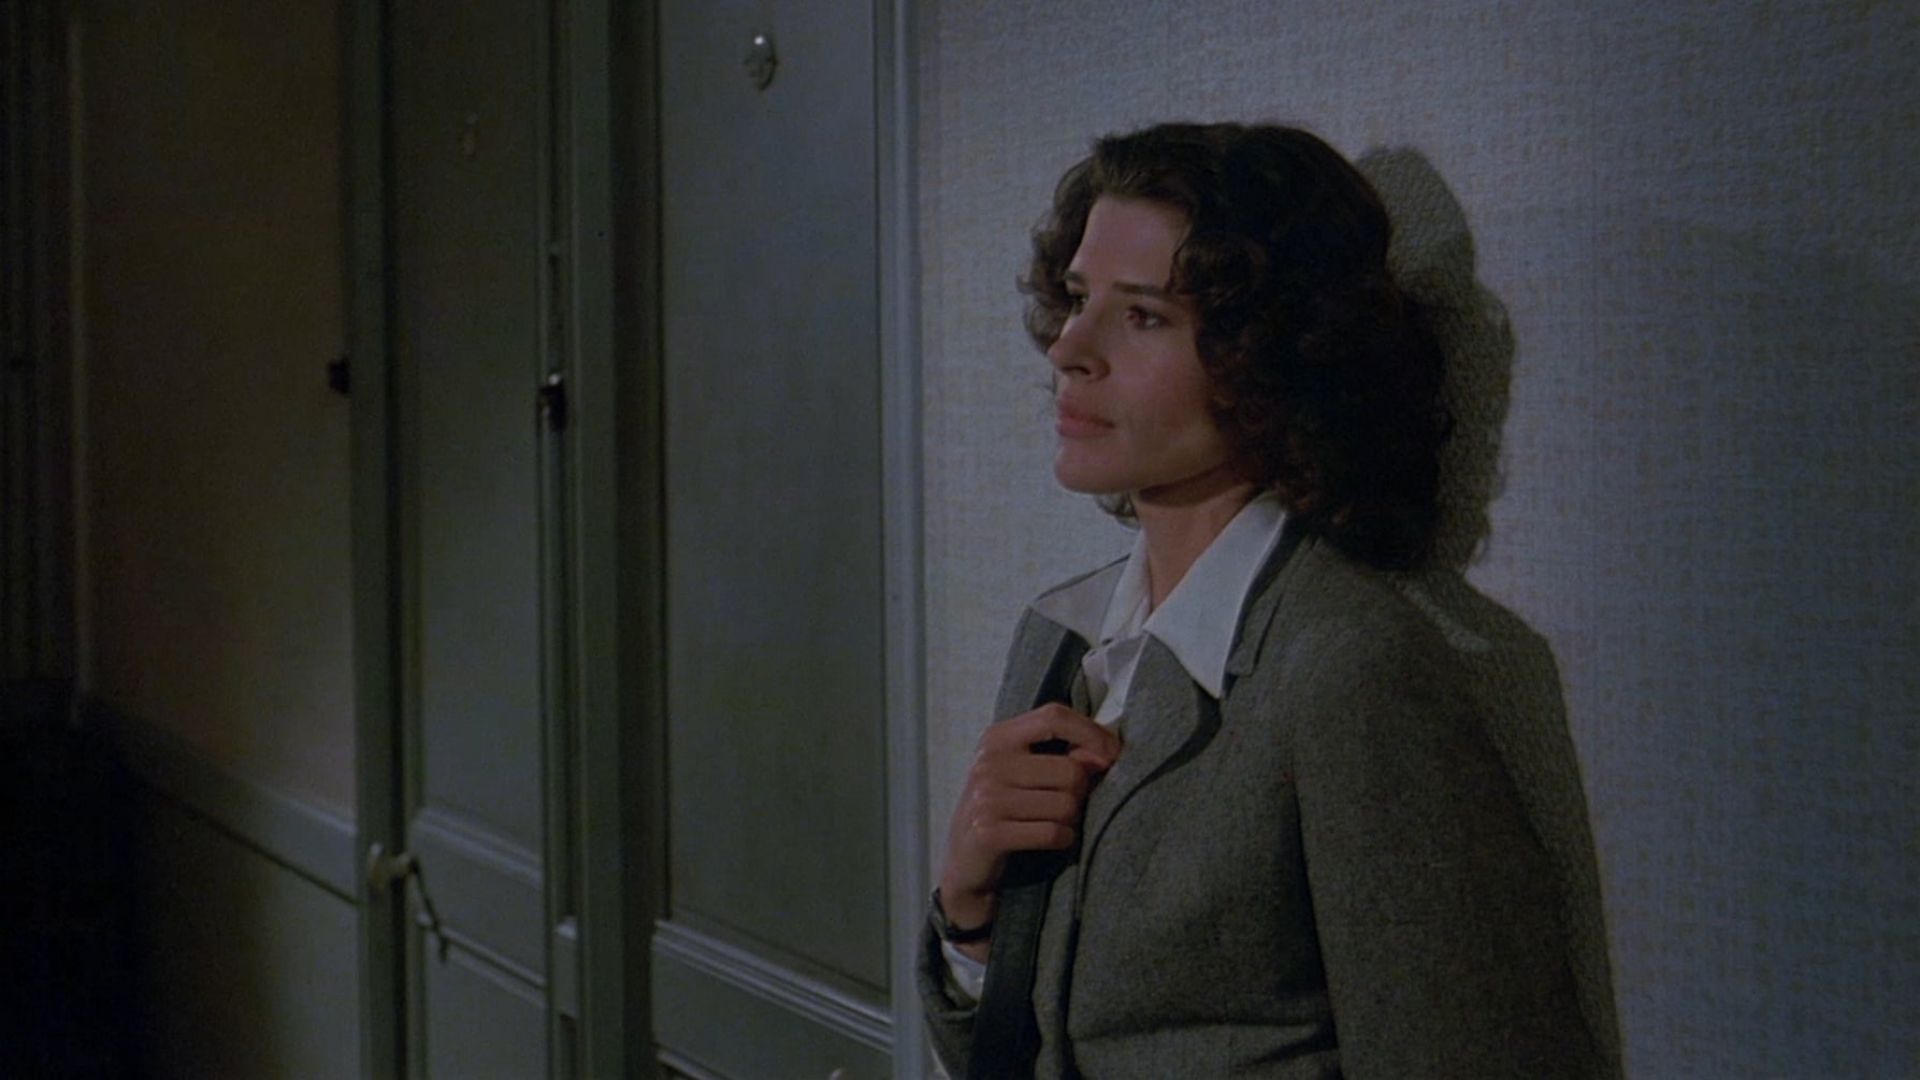 دانلود فیلم The Woman Next Door 1981